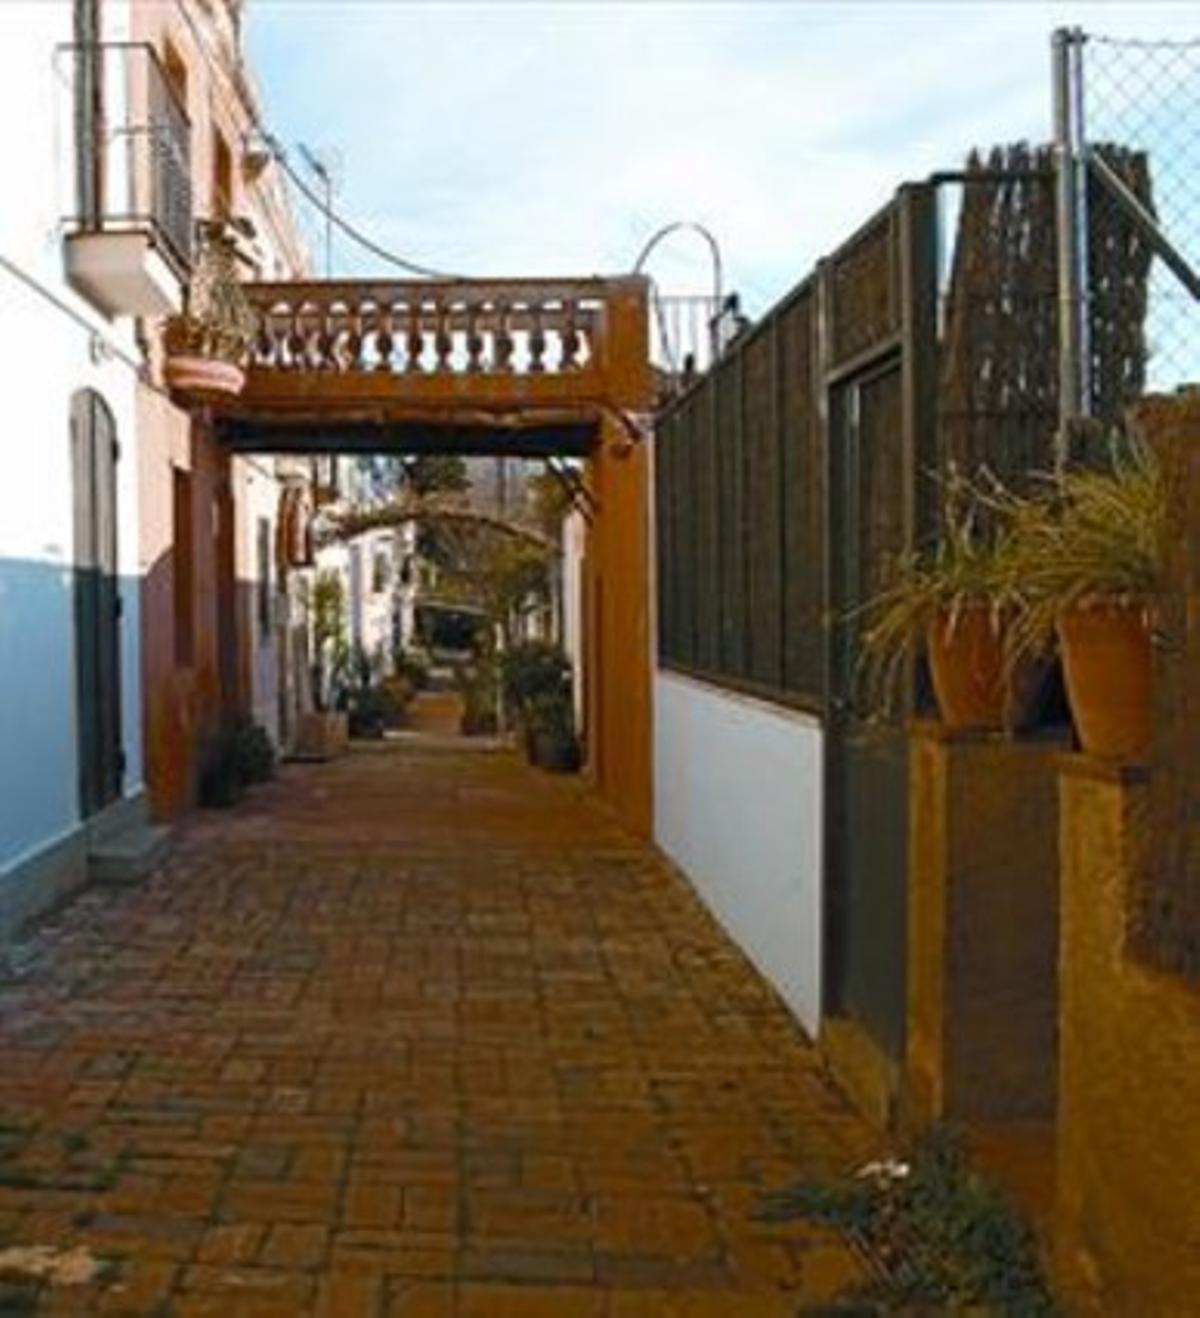 Testigo  8 La calle de Aiguafreda conserva casas con pozo y lavadero.